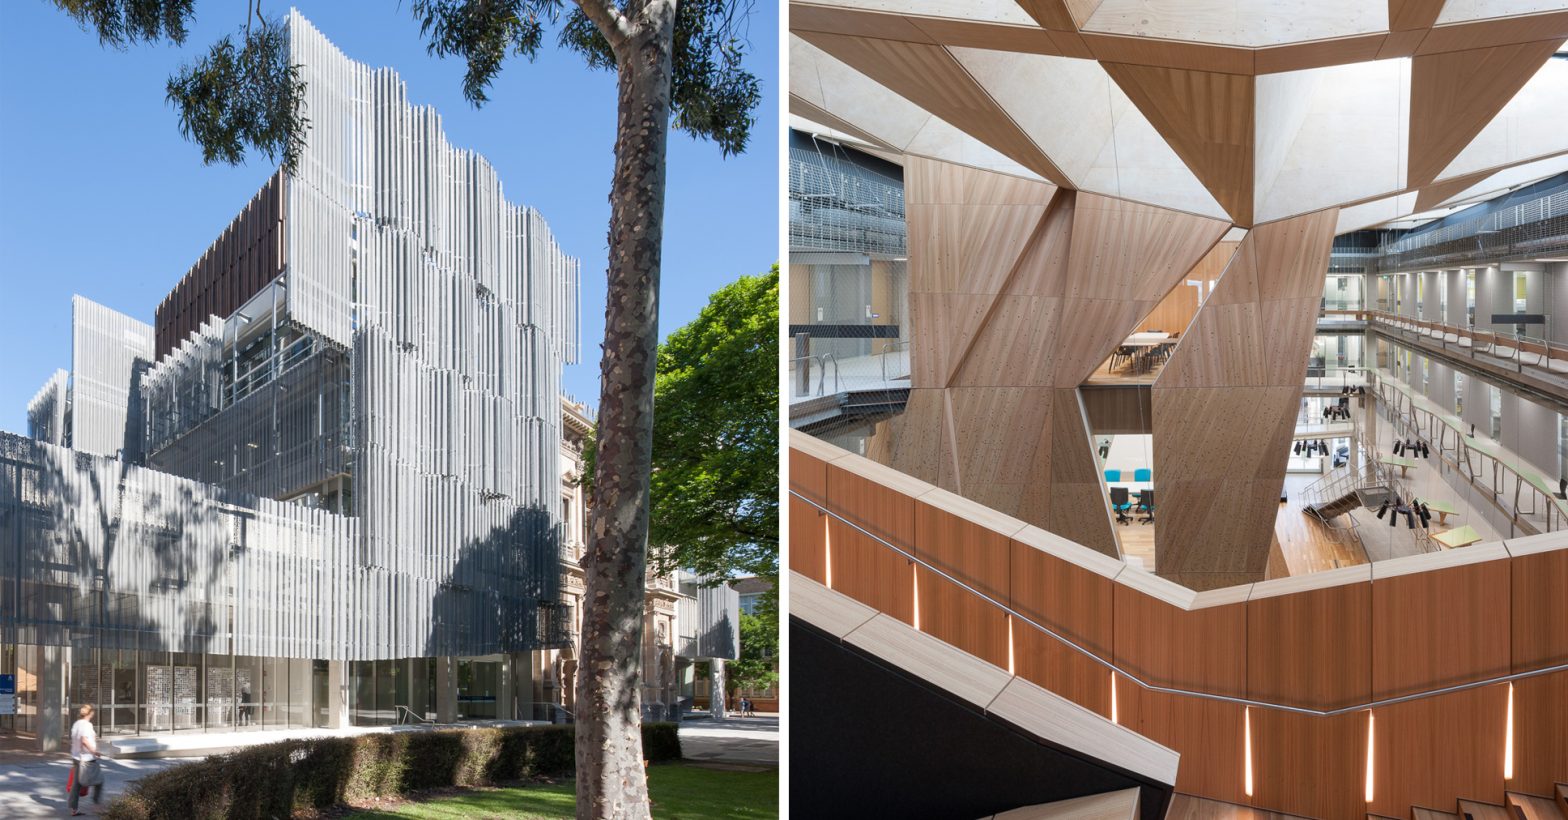 ساختمان ملبورن: معماری شگفت انگیز در سراسر پایتخت فرهنگی استرالیا